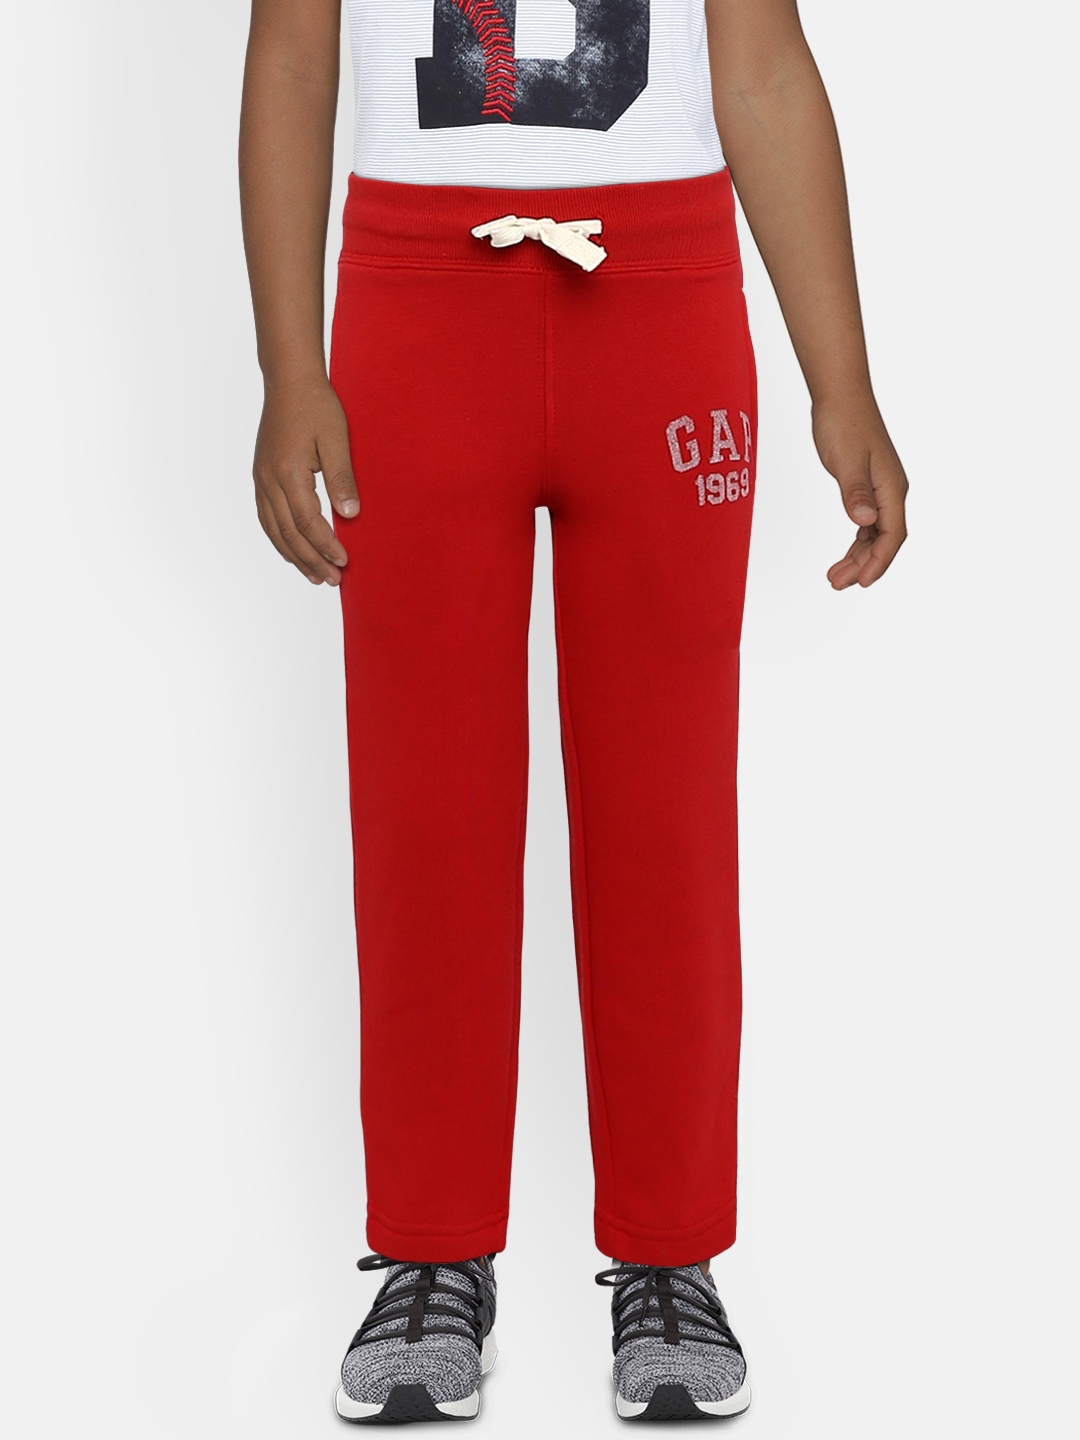 gap gapfit pants